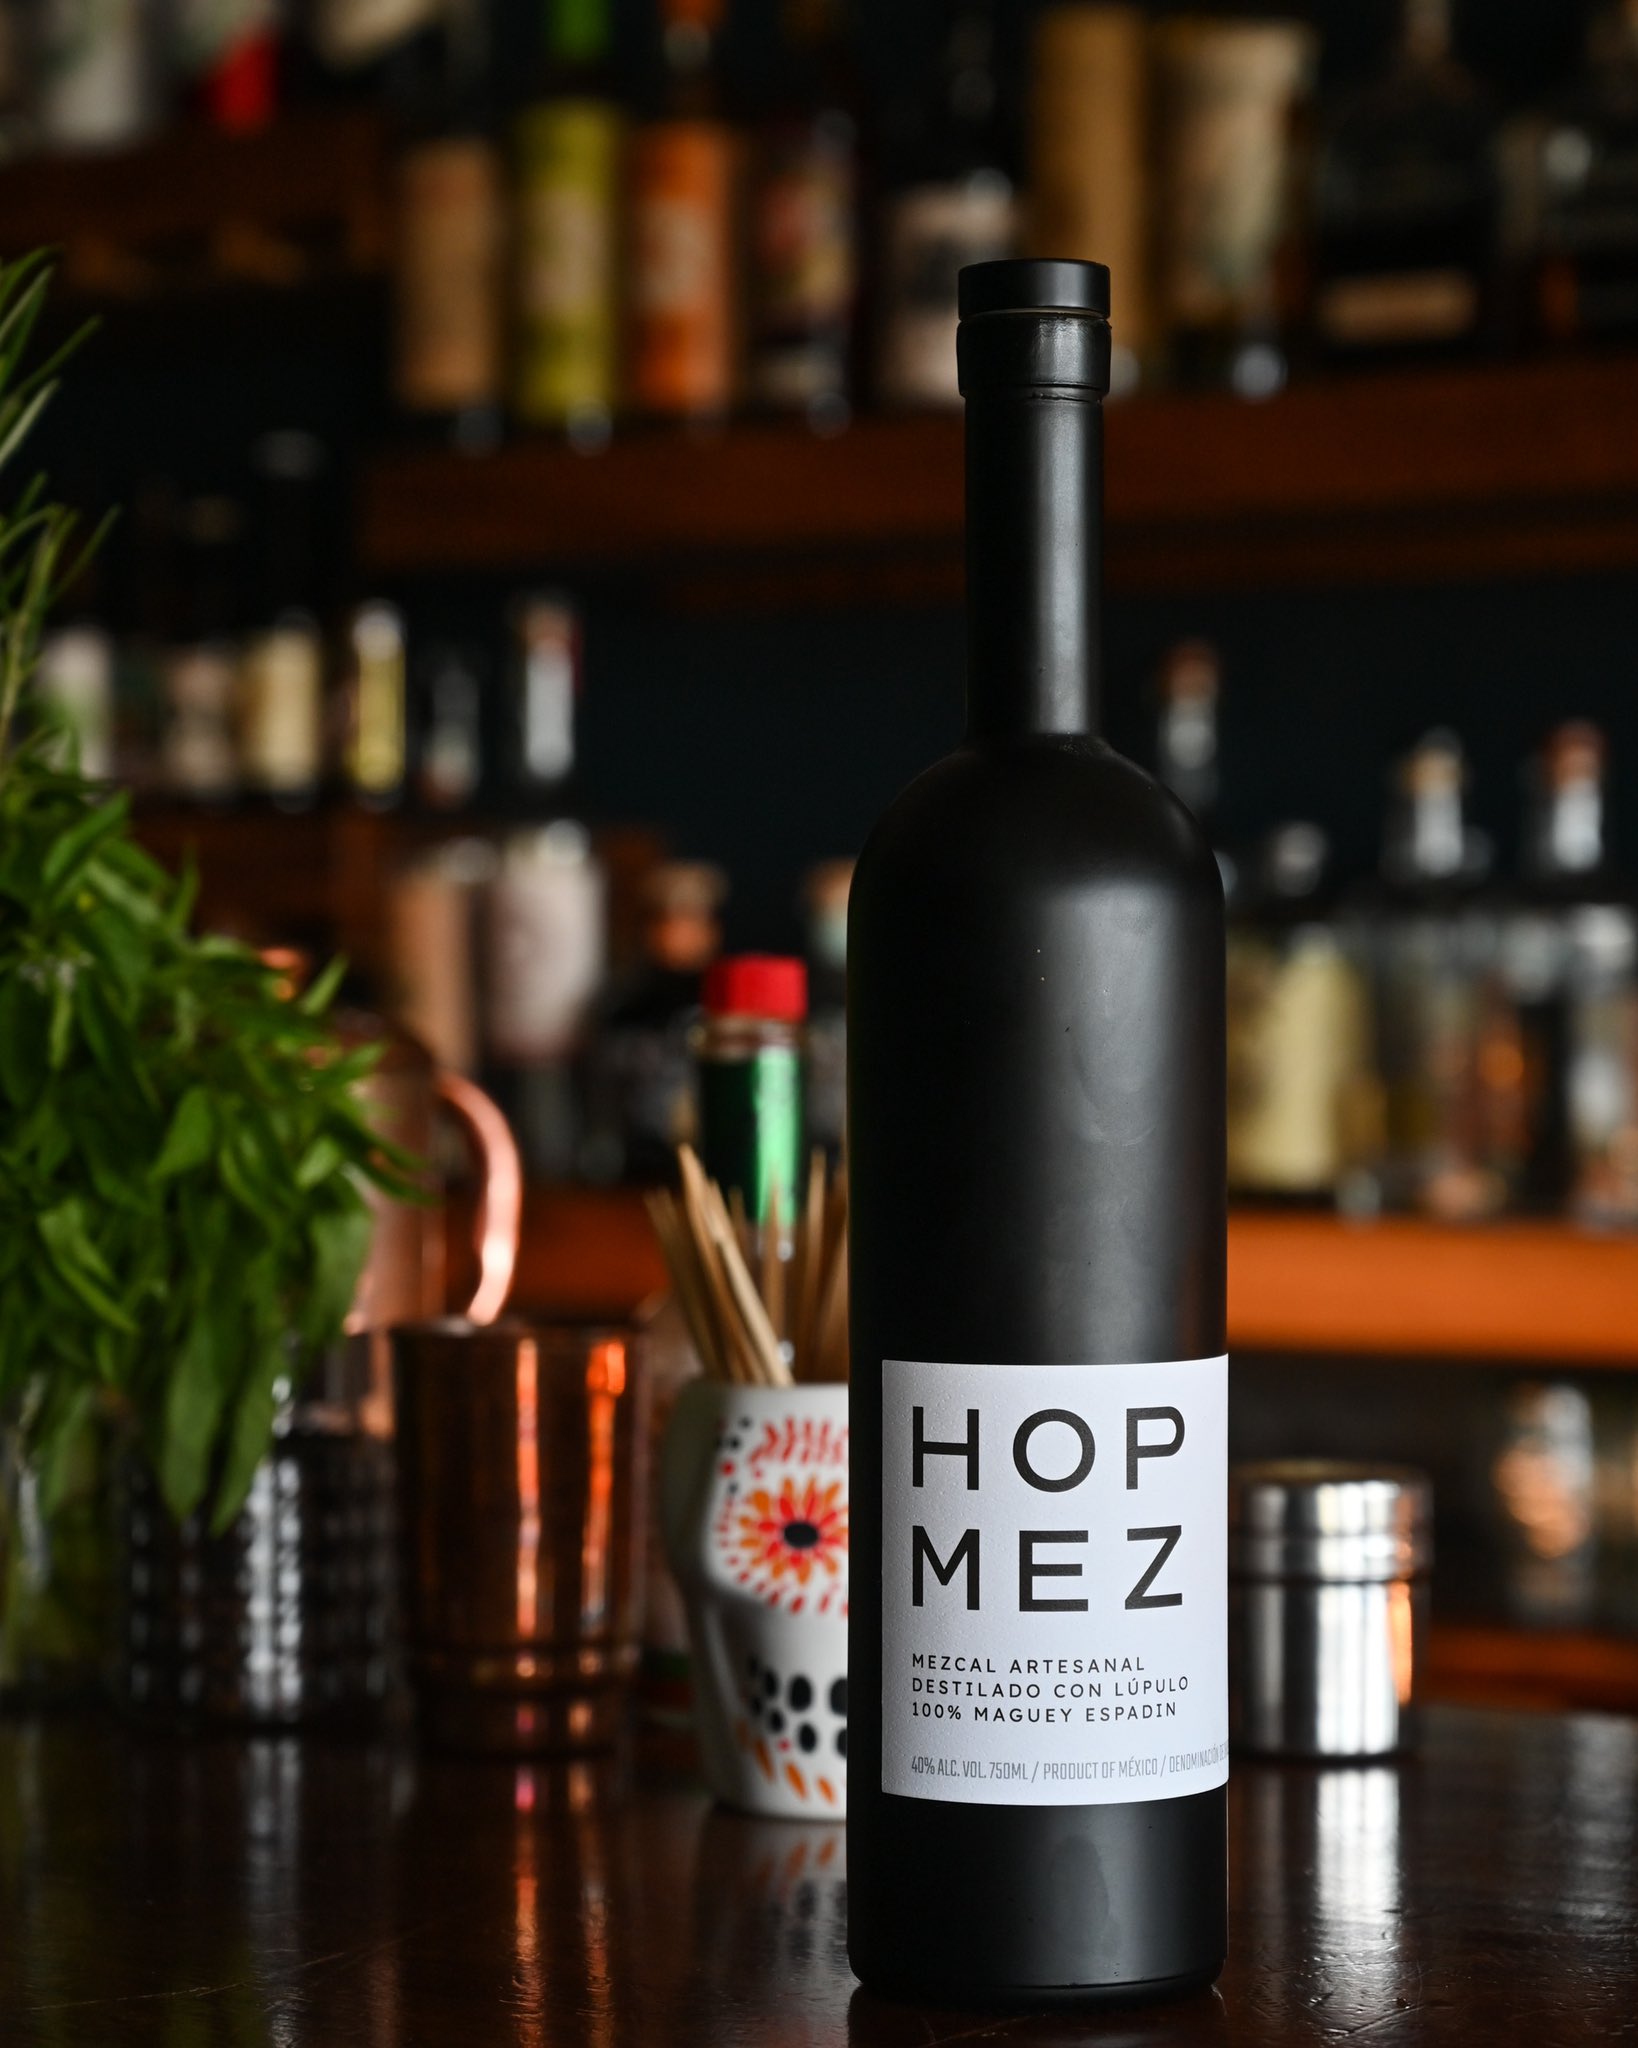 A sleek black liquor bottle with the label "Hop Mez".